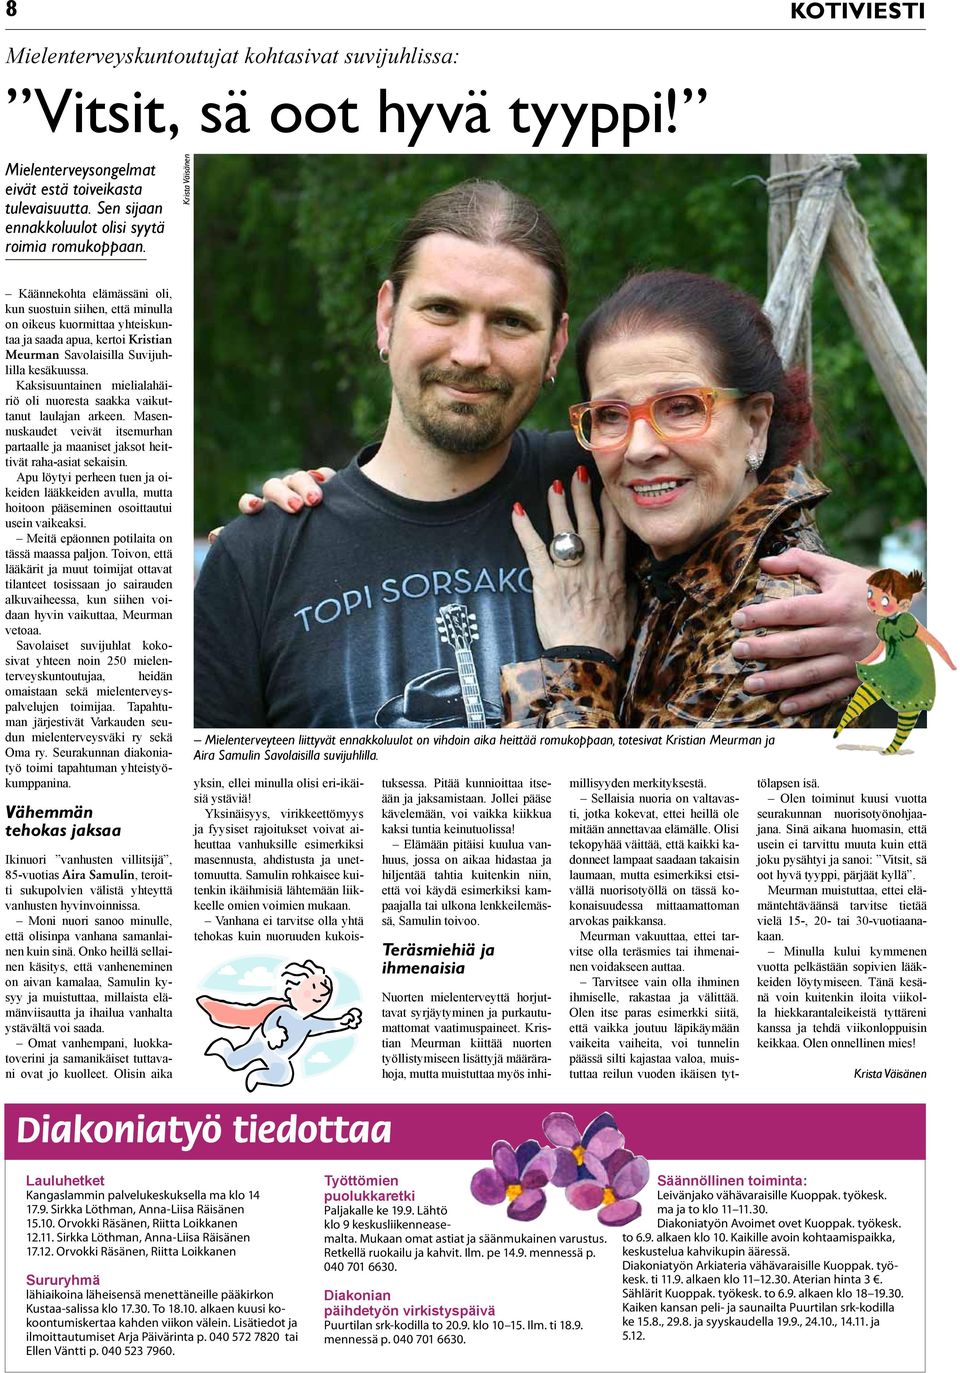 Käännekohta elämässäni oli, kun suostuin siihen, että minulla on oikeus kuormittaa yhteiskuntaa ja saada apua, kertoi Kristian Meurman Savolaisilla Suvijuhlilla kesäkuussa.